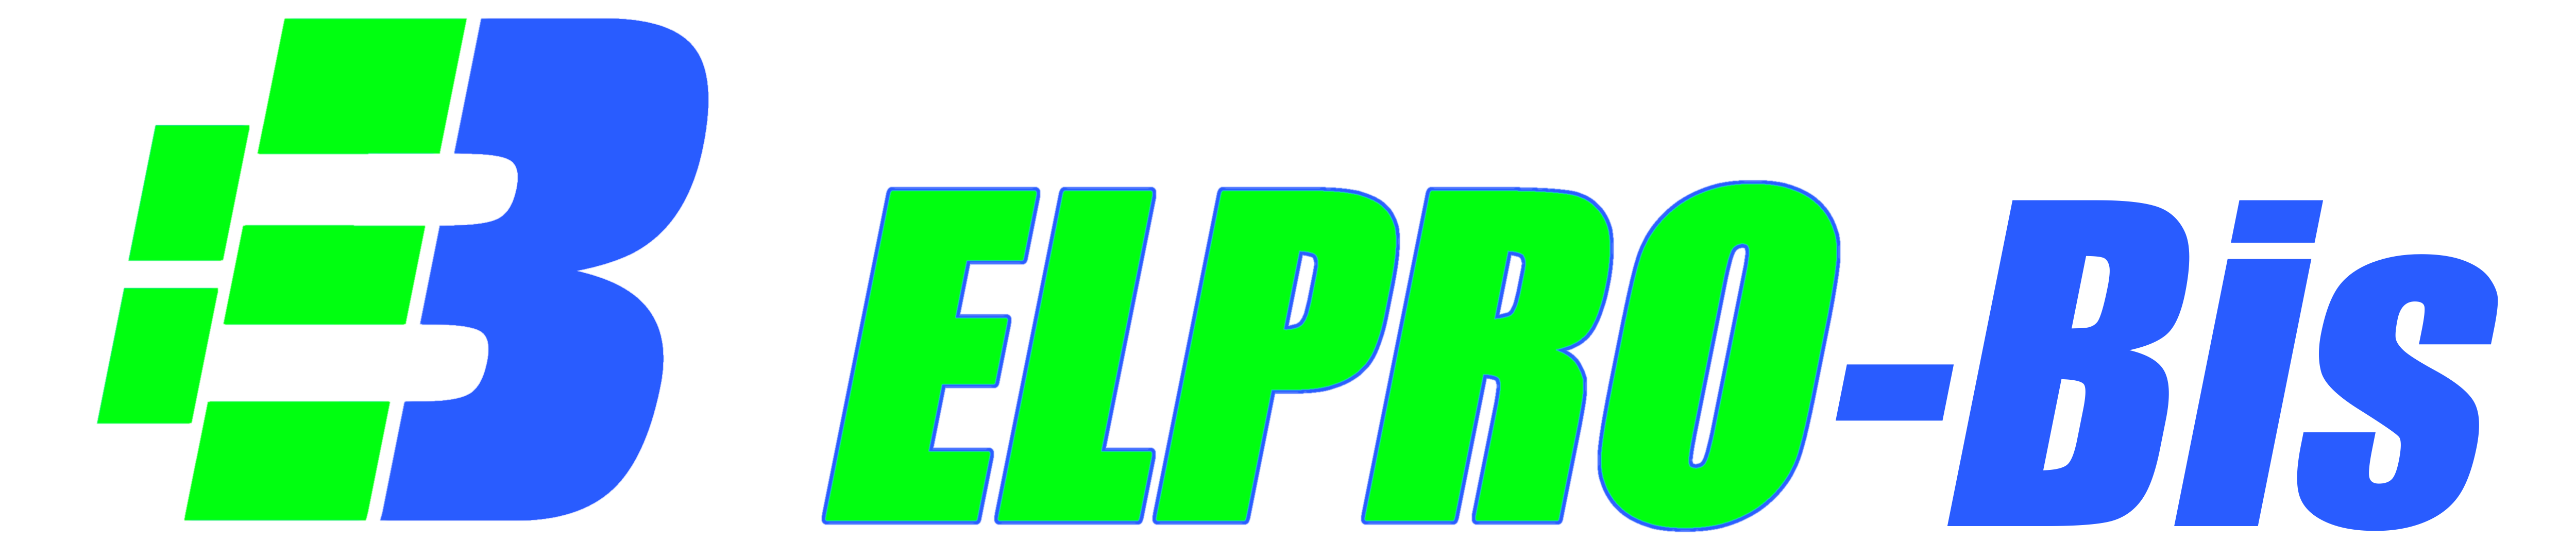 ELPRO-Bis logo